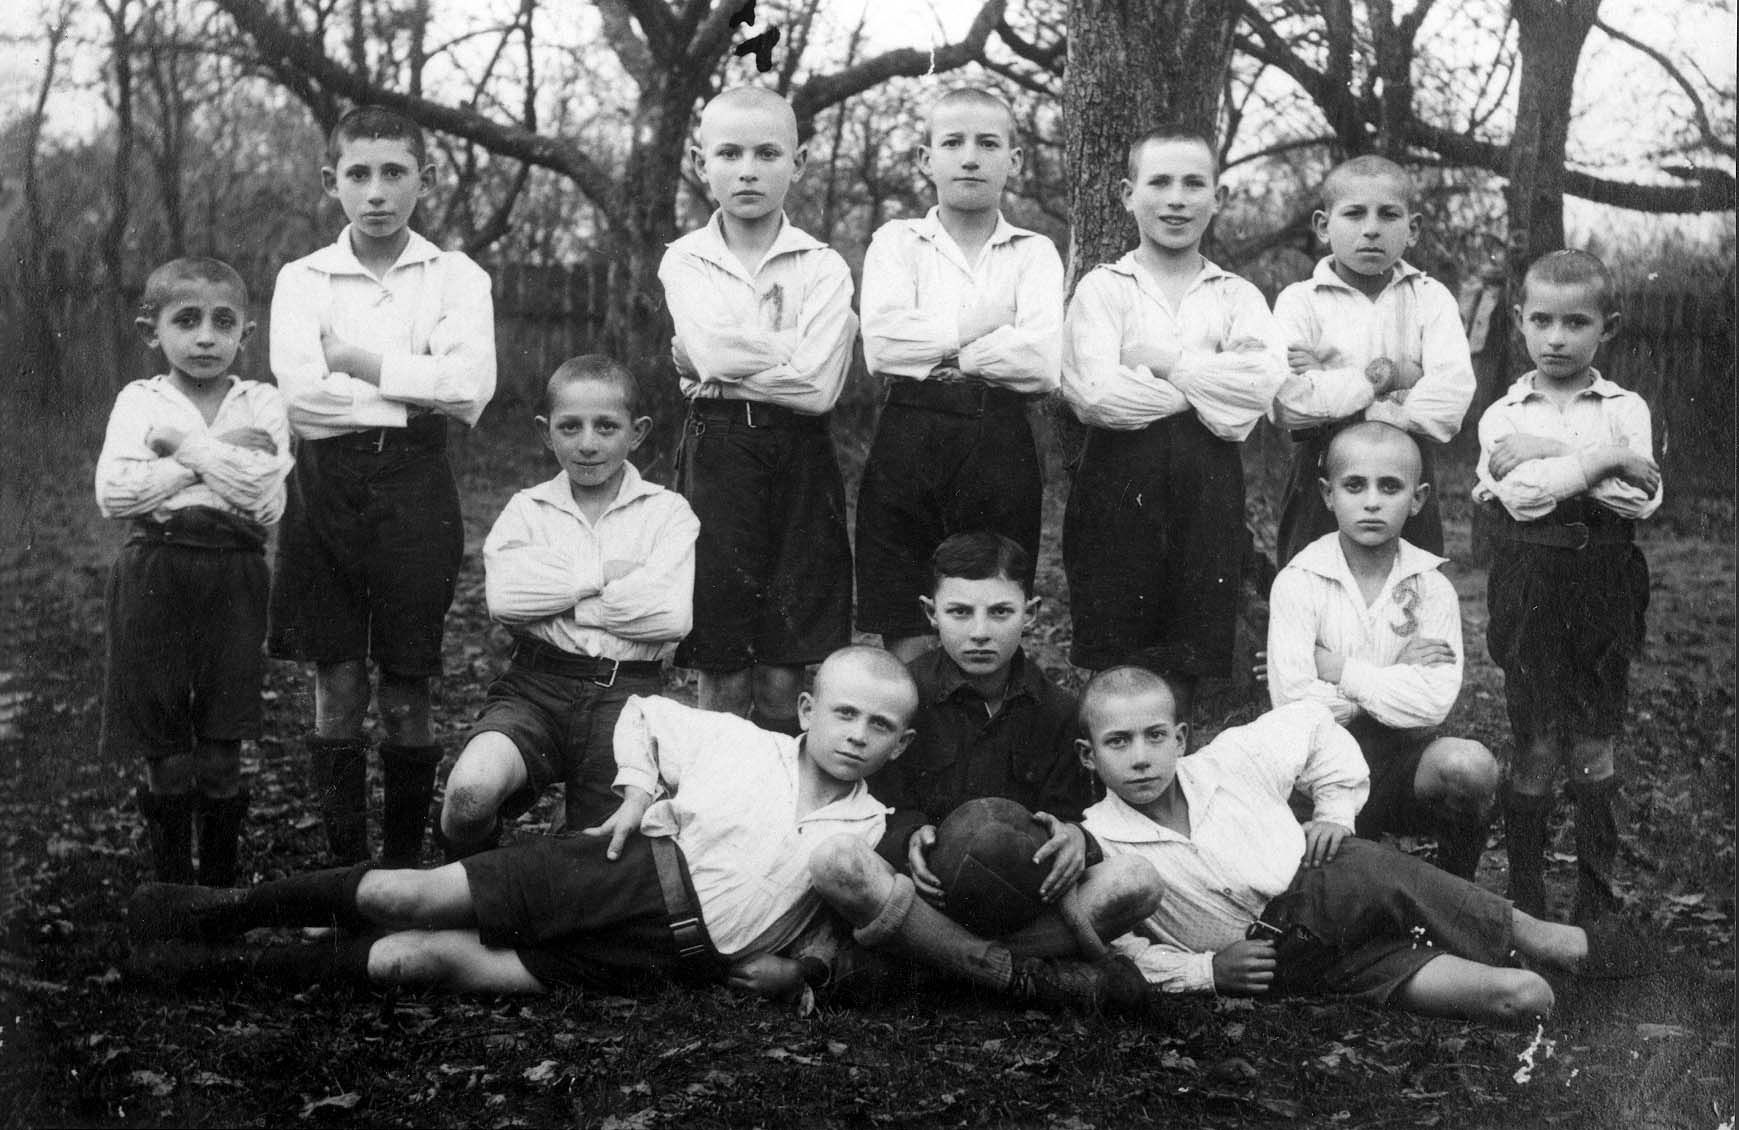 סטשוב, פולין, לפני המלחמה, קבוצת כדורגל שהורכבה מילדים יהודים